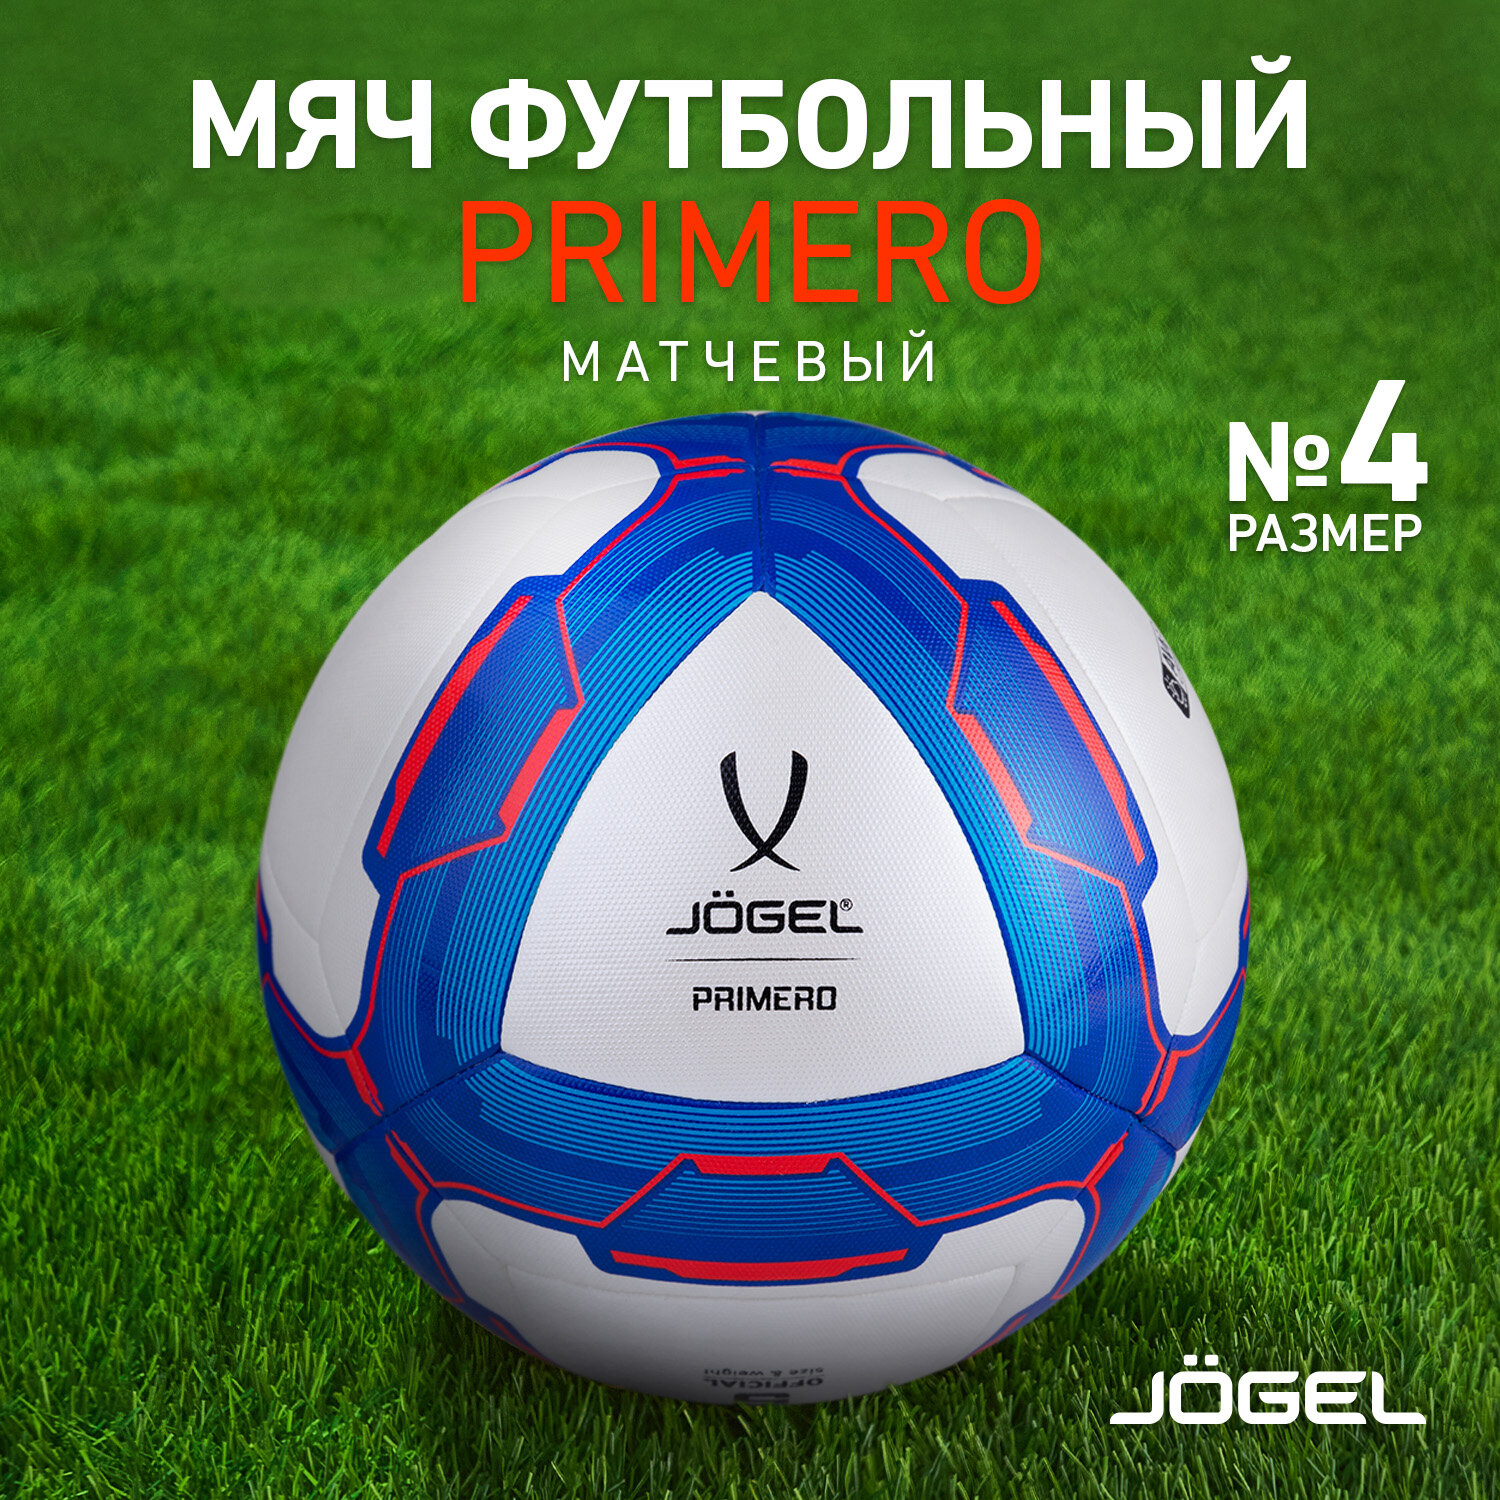 Мяч футбольный Jogel Primero, размер 4